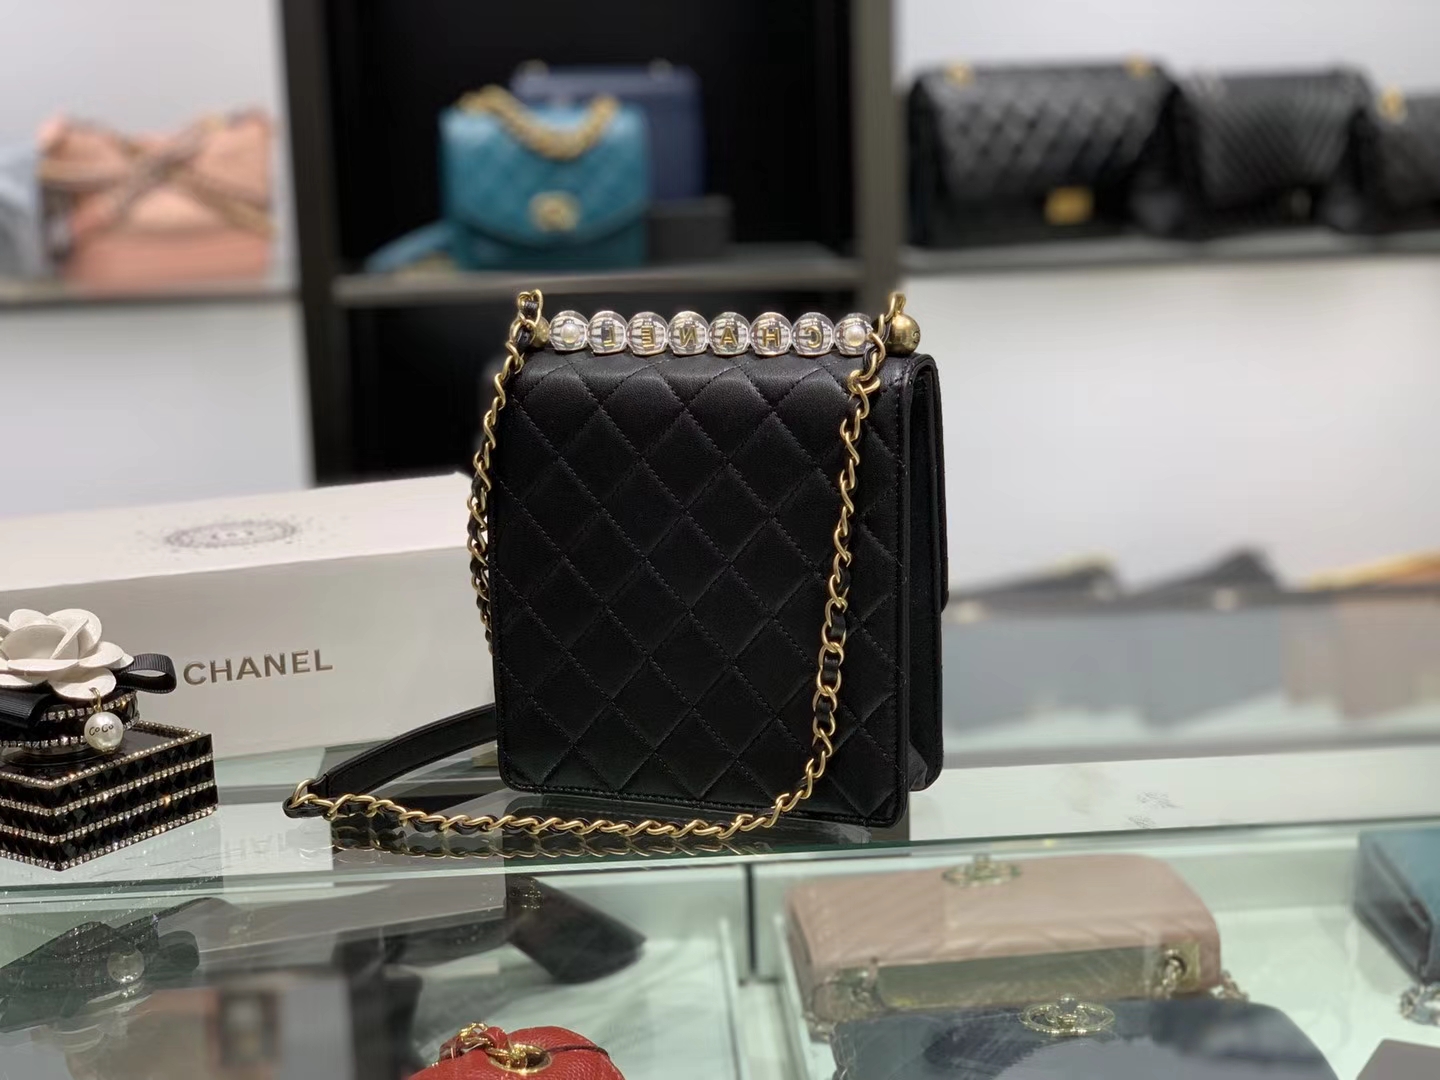 Chanel（香奈儿）???? 春夏升级版 透明珍珠包 黑色 金扣